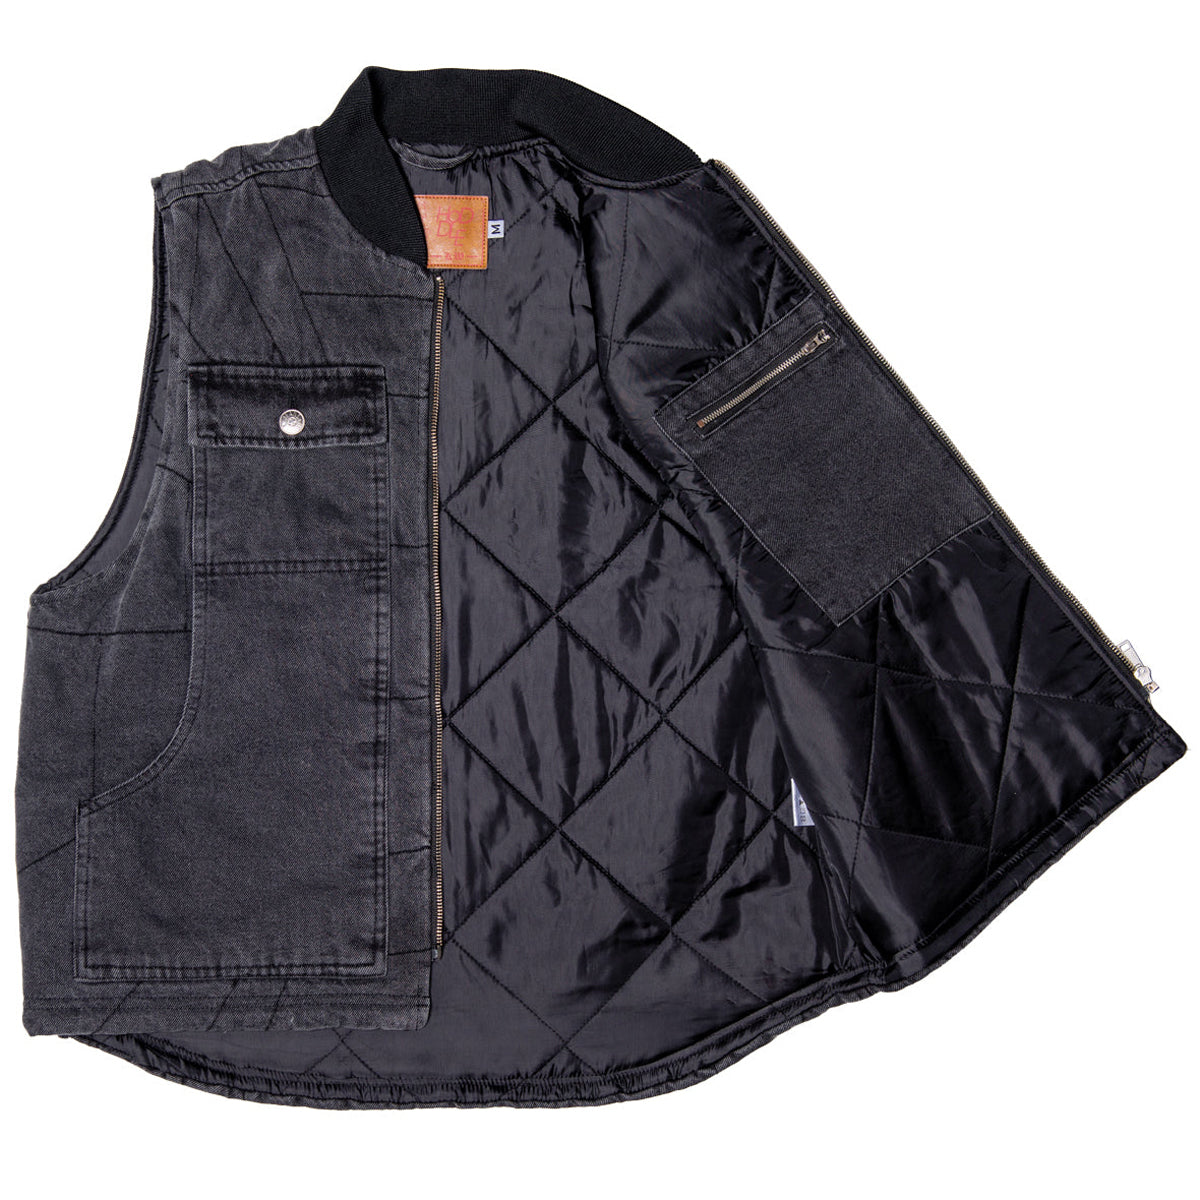 Hoddle Zip Up Carpenter Vest - Black Denim Wash image 3